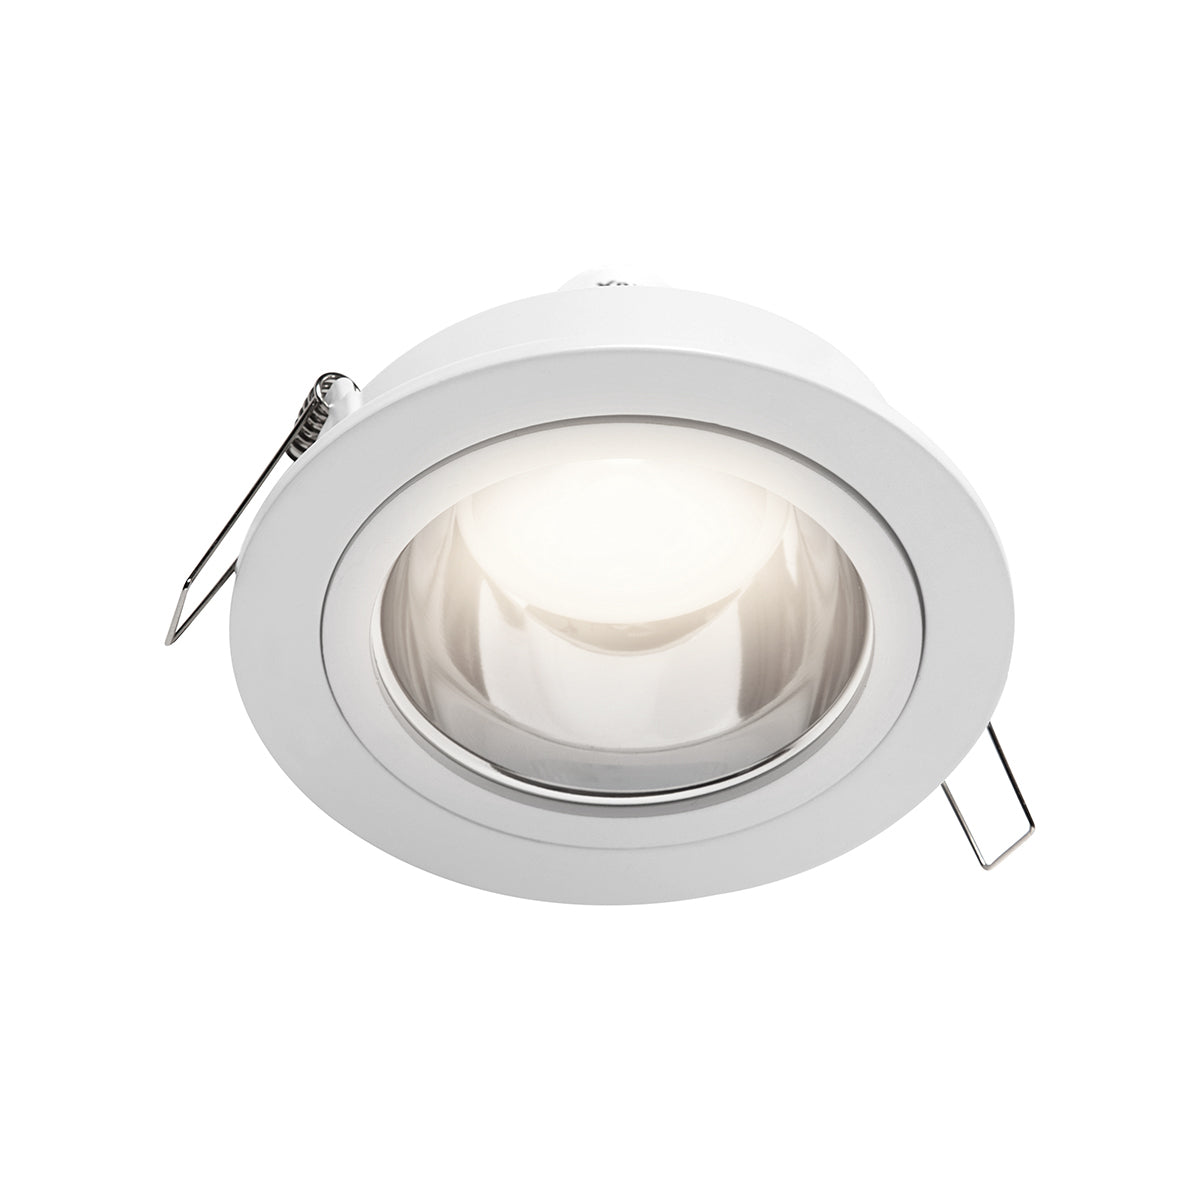 Luminario downlight redondo para empotrar en techo opera lámpara MR16, Modelo TH-1226 Illux